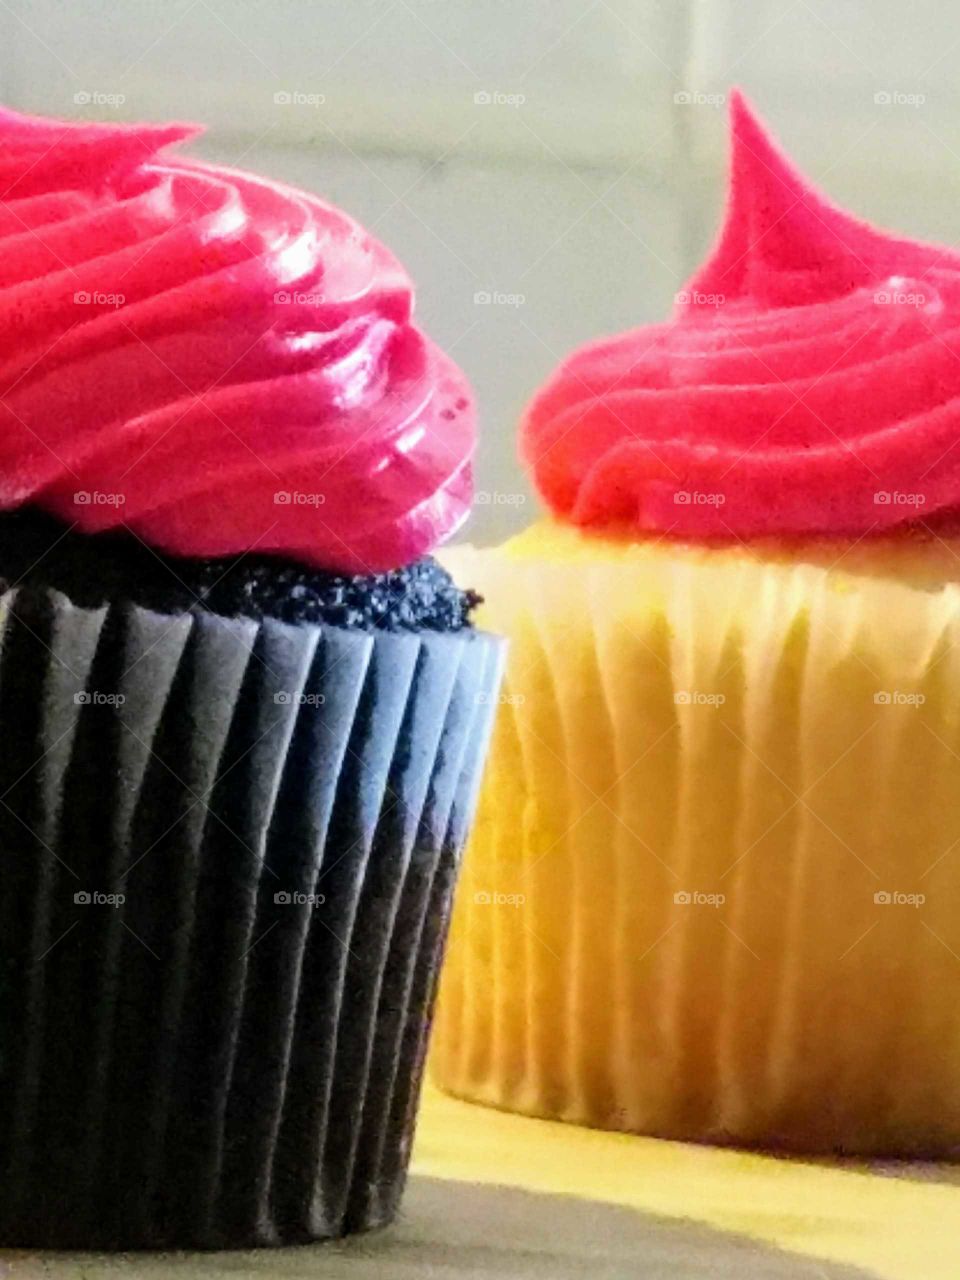 Cupcakes Closeup